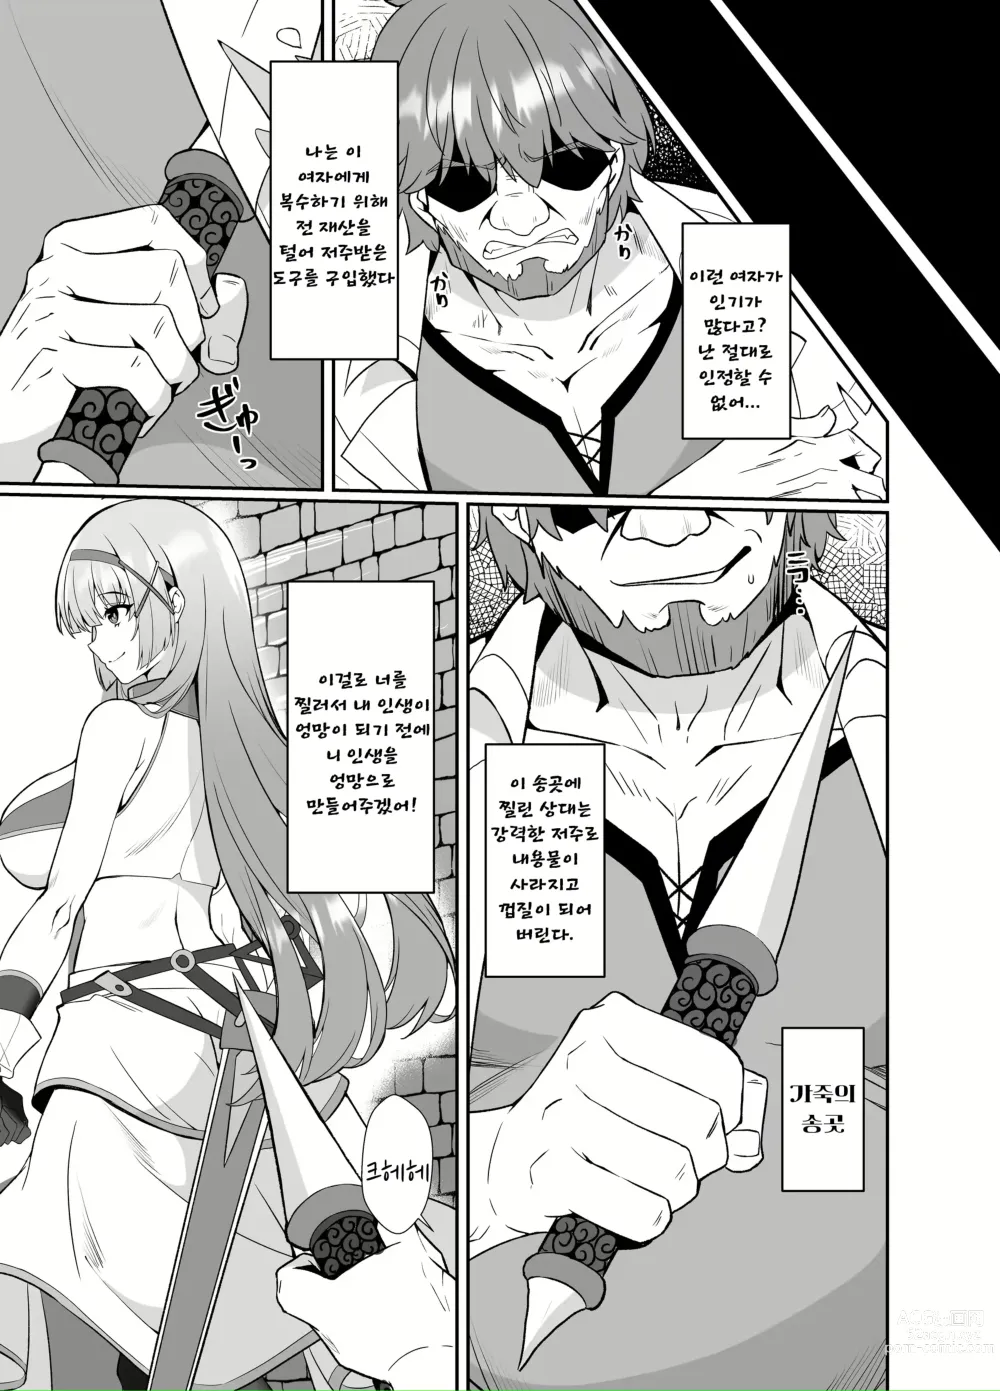 Page 5 of doujinshi 공주님 인생 잘 먹겠습니다 -가죽화된 아저씨는 몸을 빼앗기고 마는 공주기사 이야기-